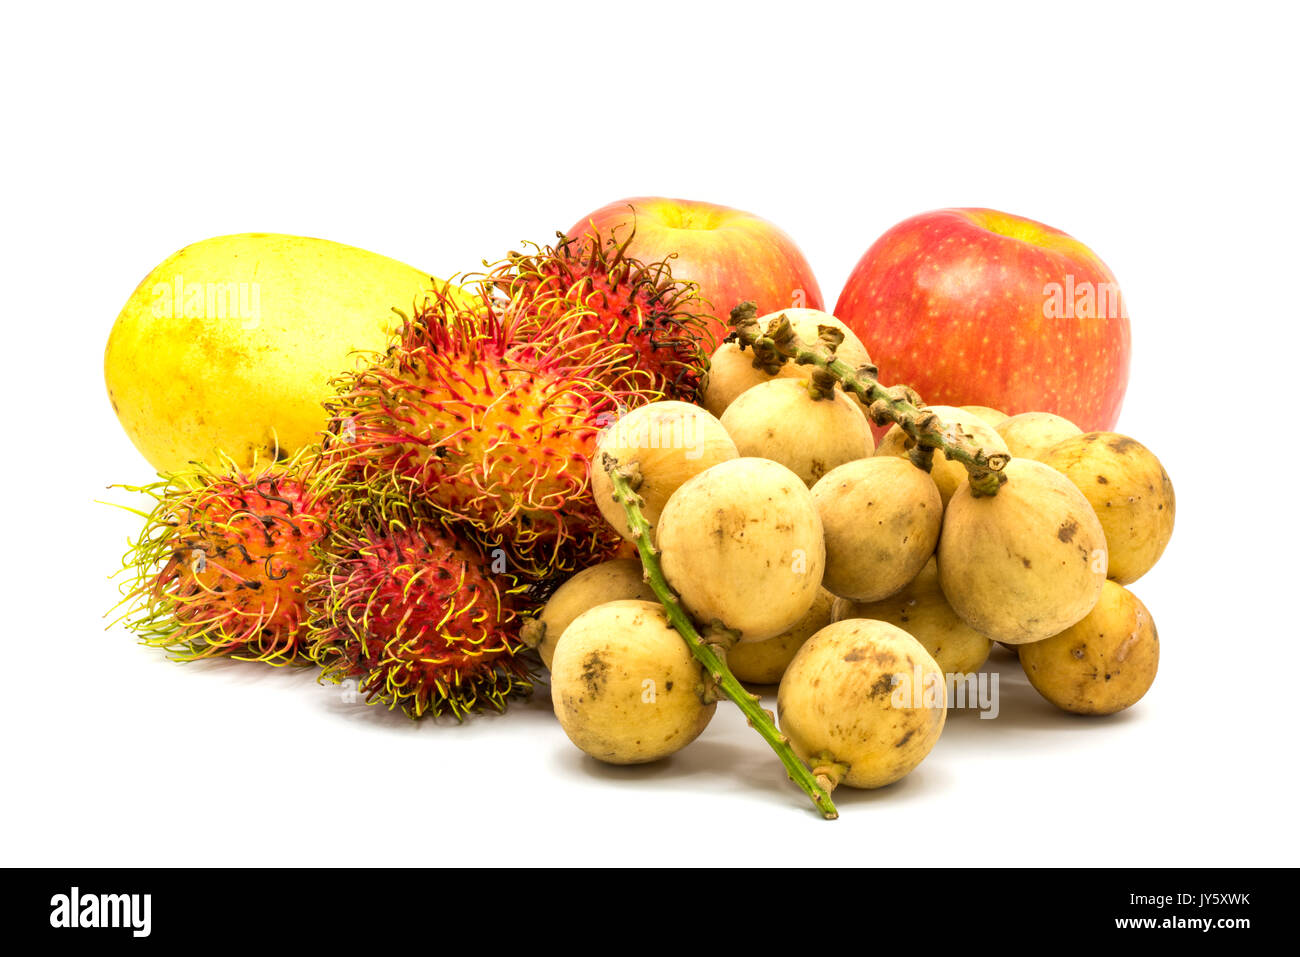 Différents types de fruits tropicaux, mangue, ramboutan, pommes et longkongs sur fond blanc Banque D'Images